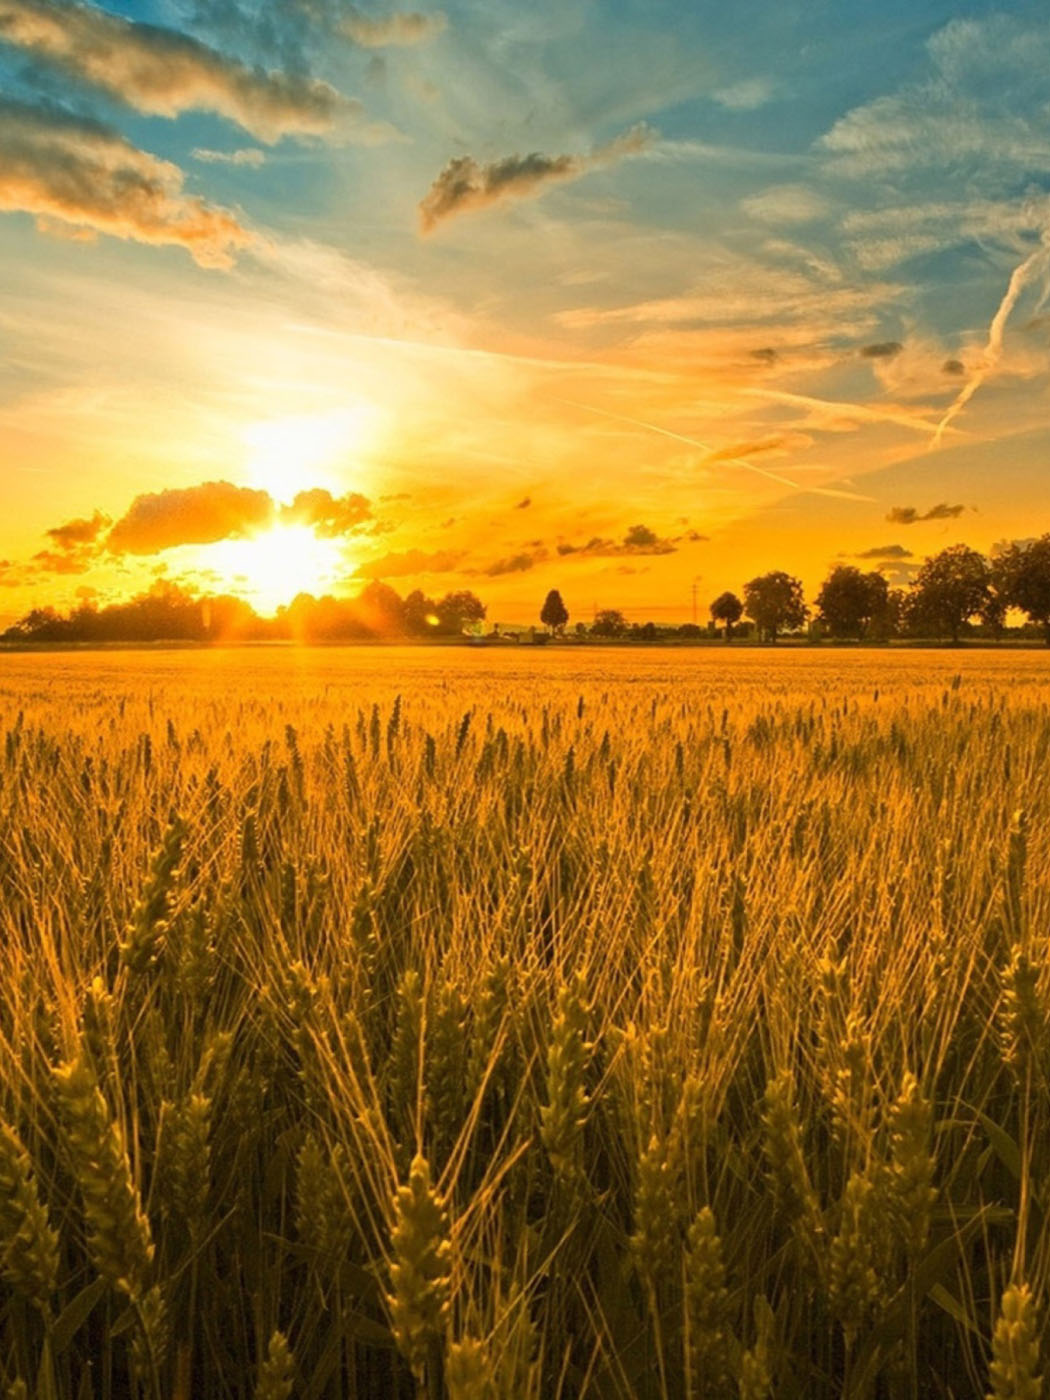 Скачать картинку Закат на пшеничном поле